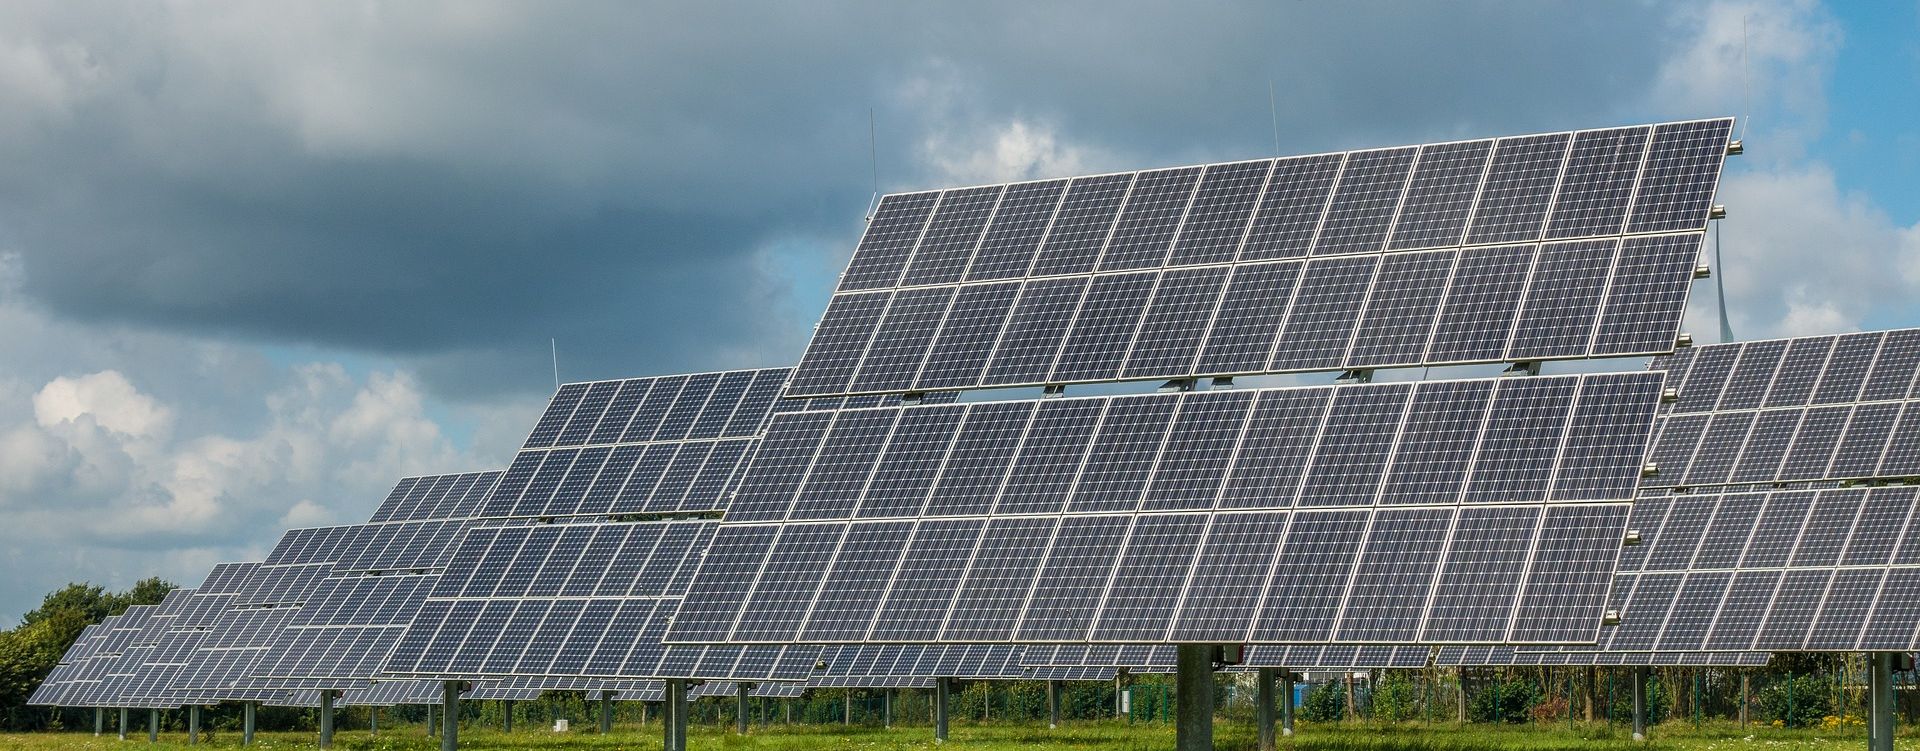 AleaSoft - Paneles solares fotovoltaicos de Portugal